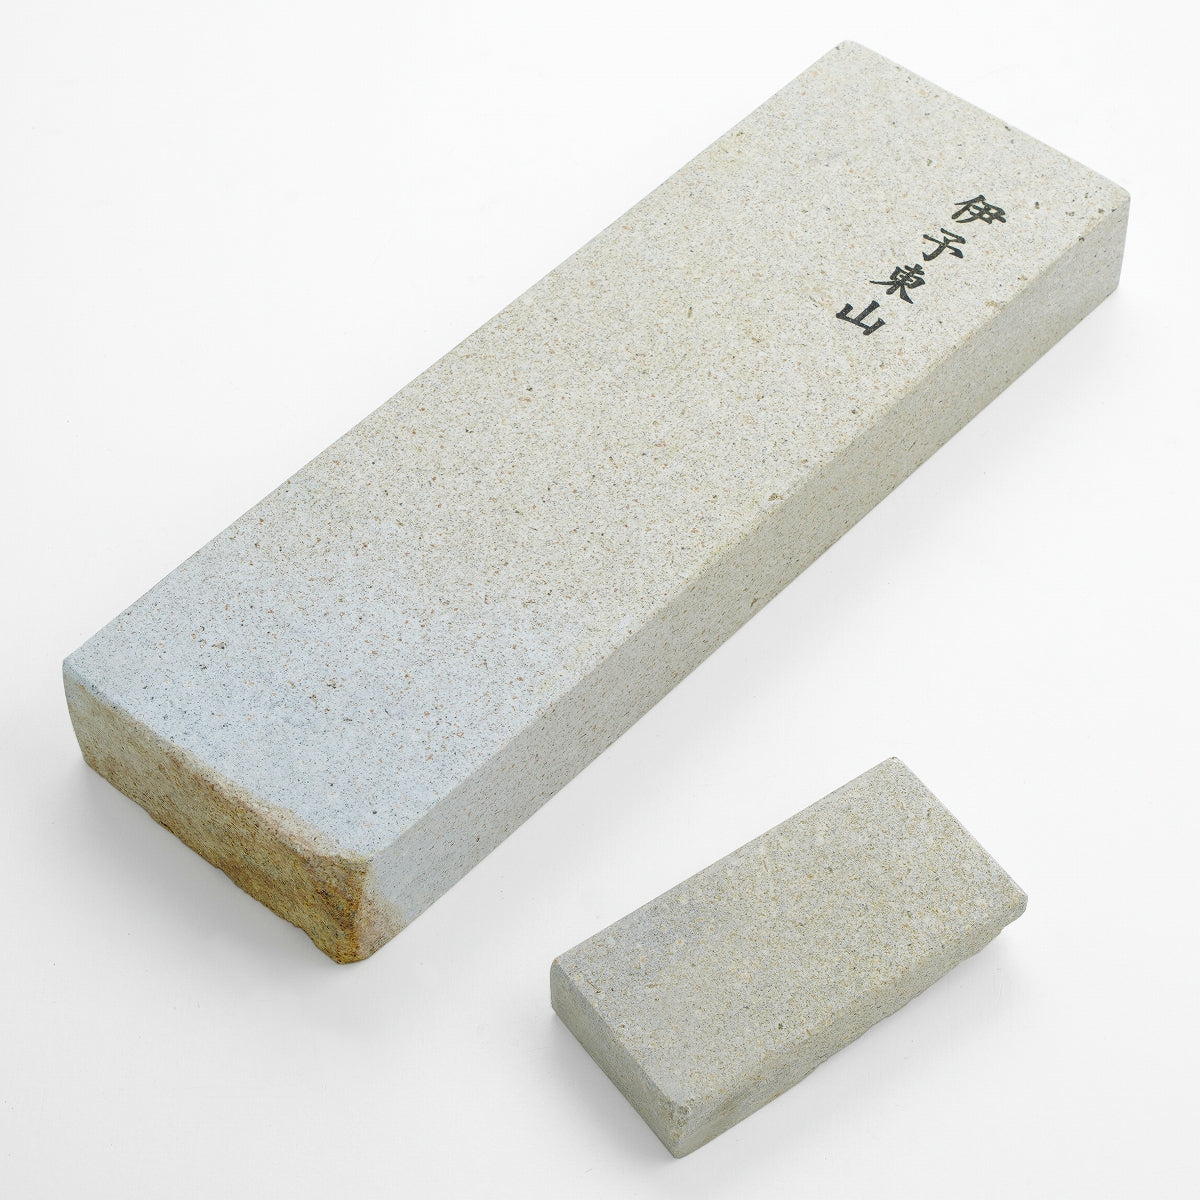 "IYO HIGASHIYAMA", Tennen Toishi (Japanese Natural Stone), 1300g